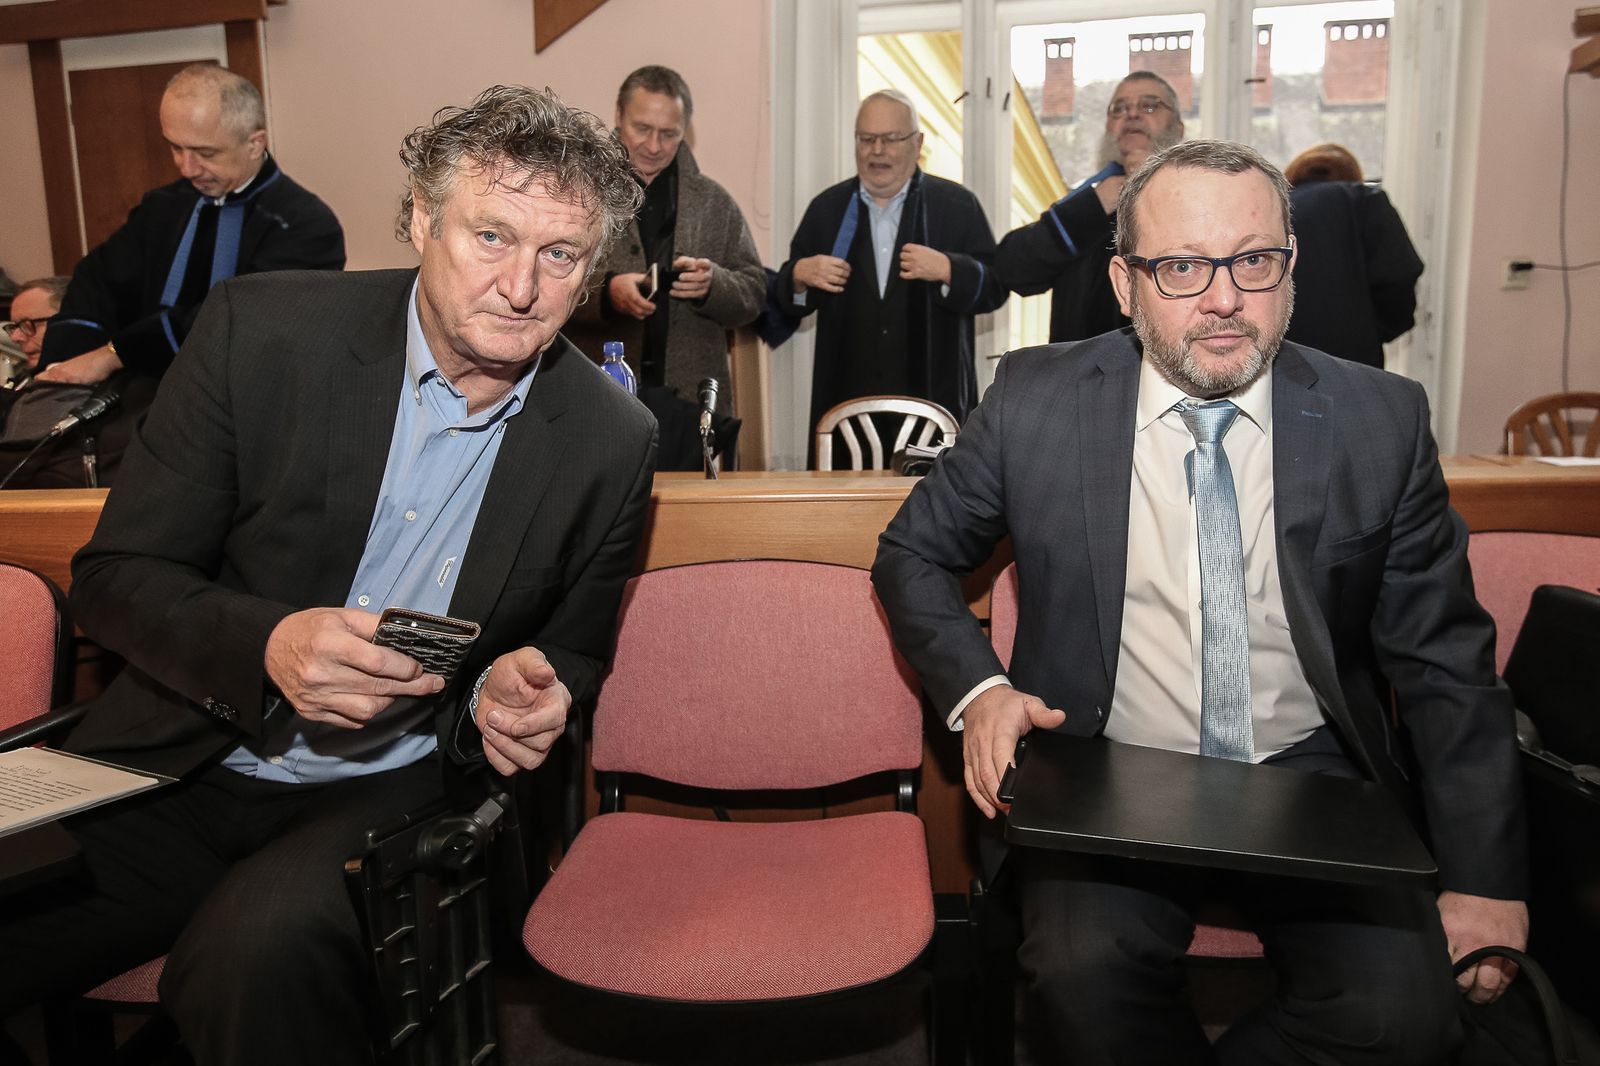 Soud kauzy Mostecká uhelná - exmanažer Jiří Diviš (vlevo), Petr Kraus